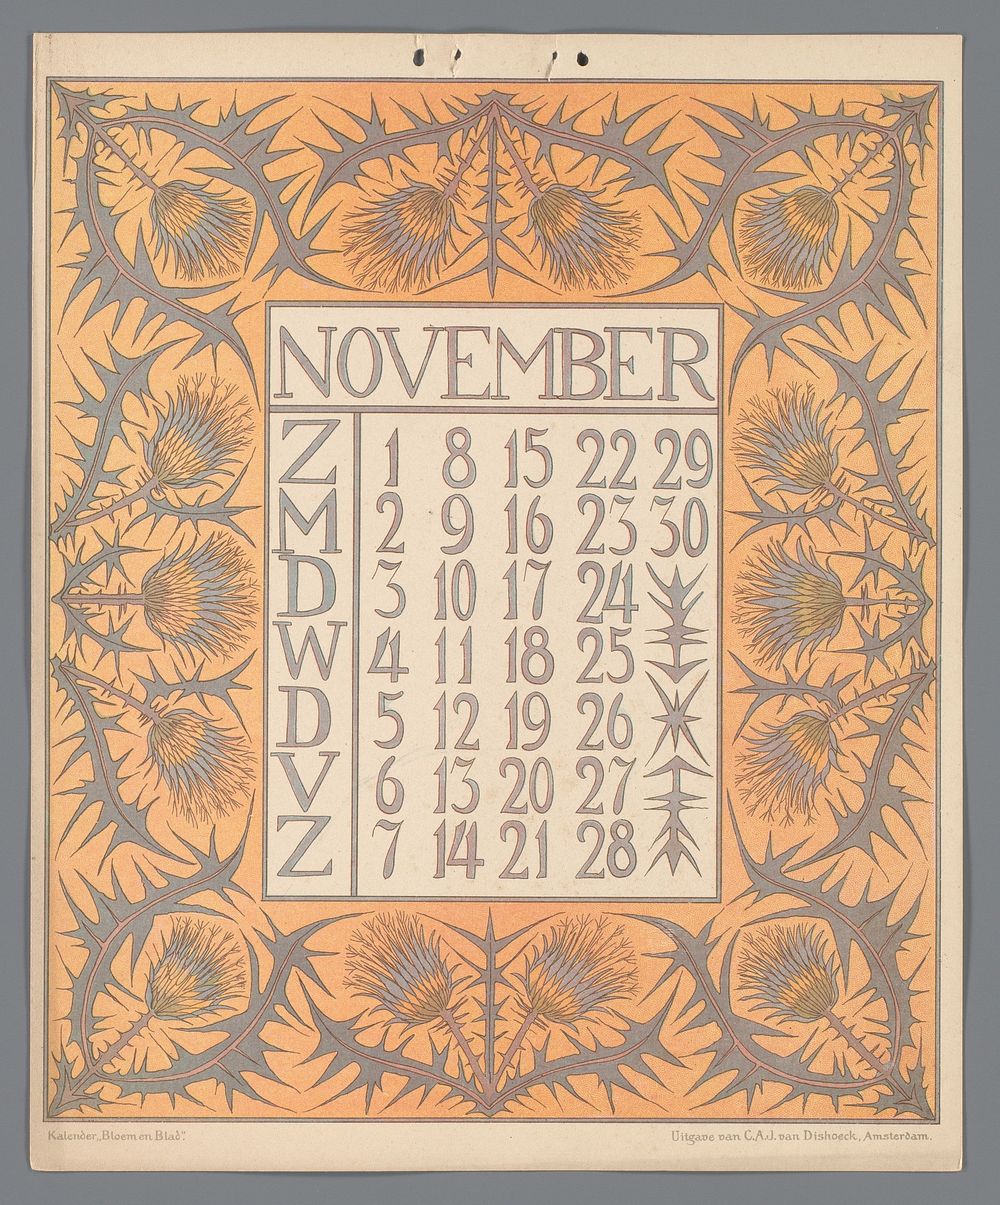 Kalenderblad voor november van de kalender 'Bloem en blad' (c. 1900 - c. 1910) by Gebroeders Braakensiek, Netty van der…